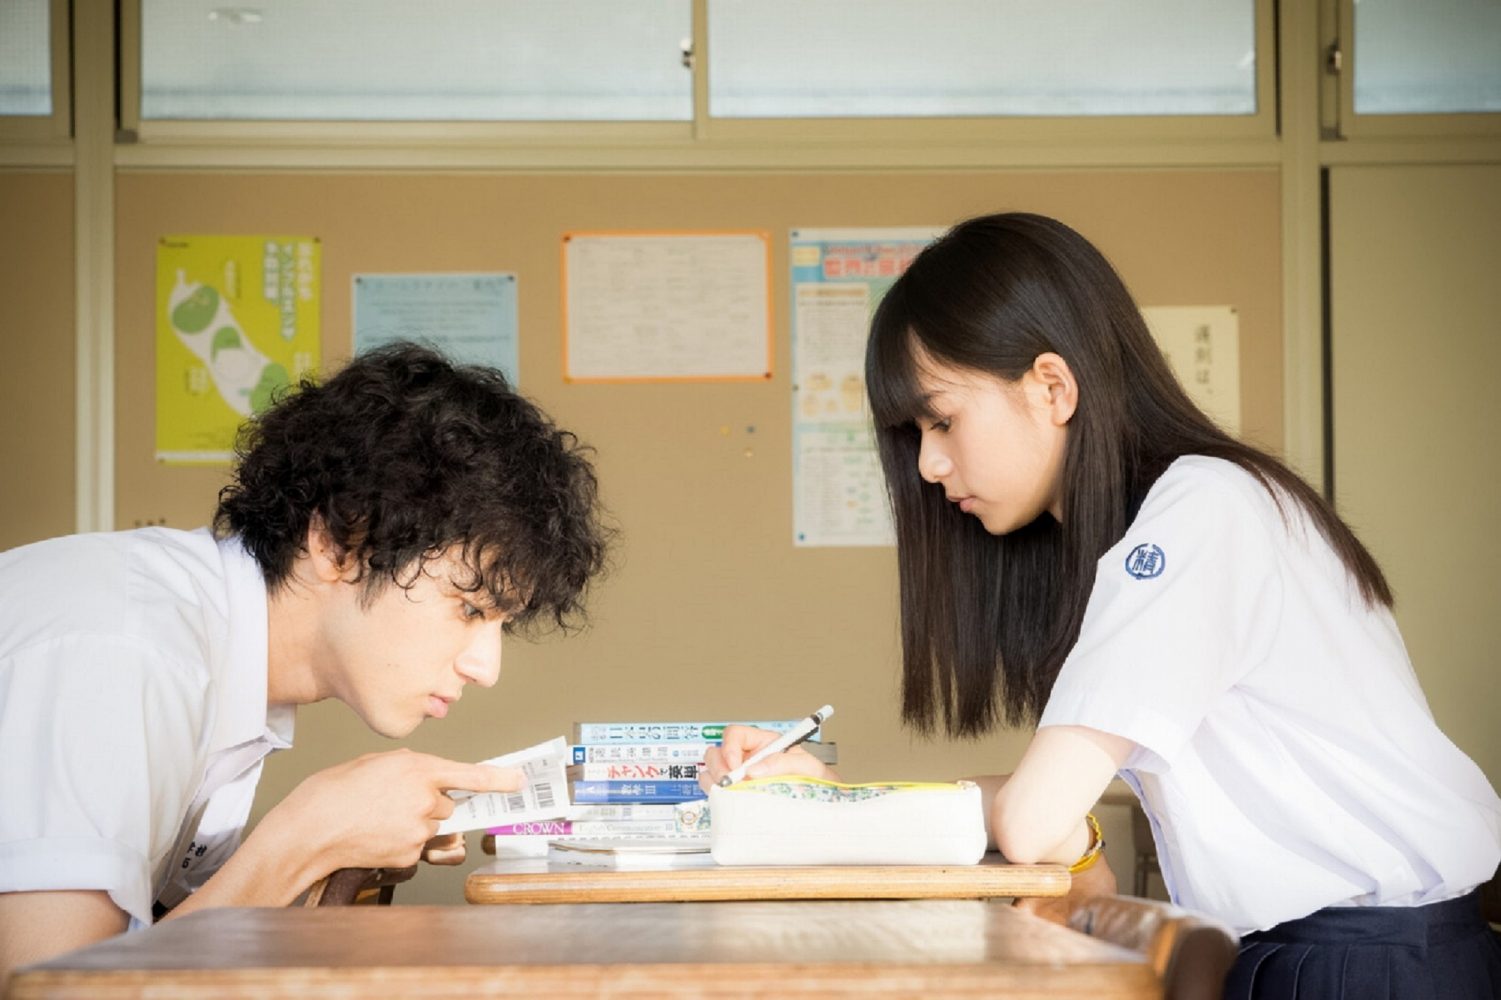 Phim Nhật Bản học đường: Năm tháng ấy tôi từng theo đuổi em - You Are the Apple of My Eye (2018)